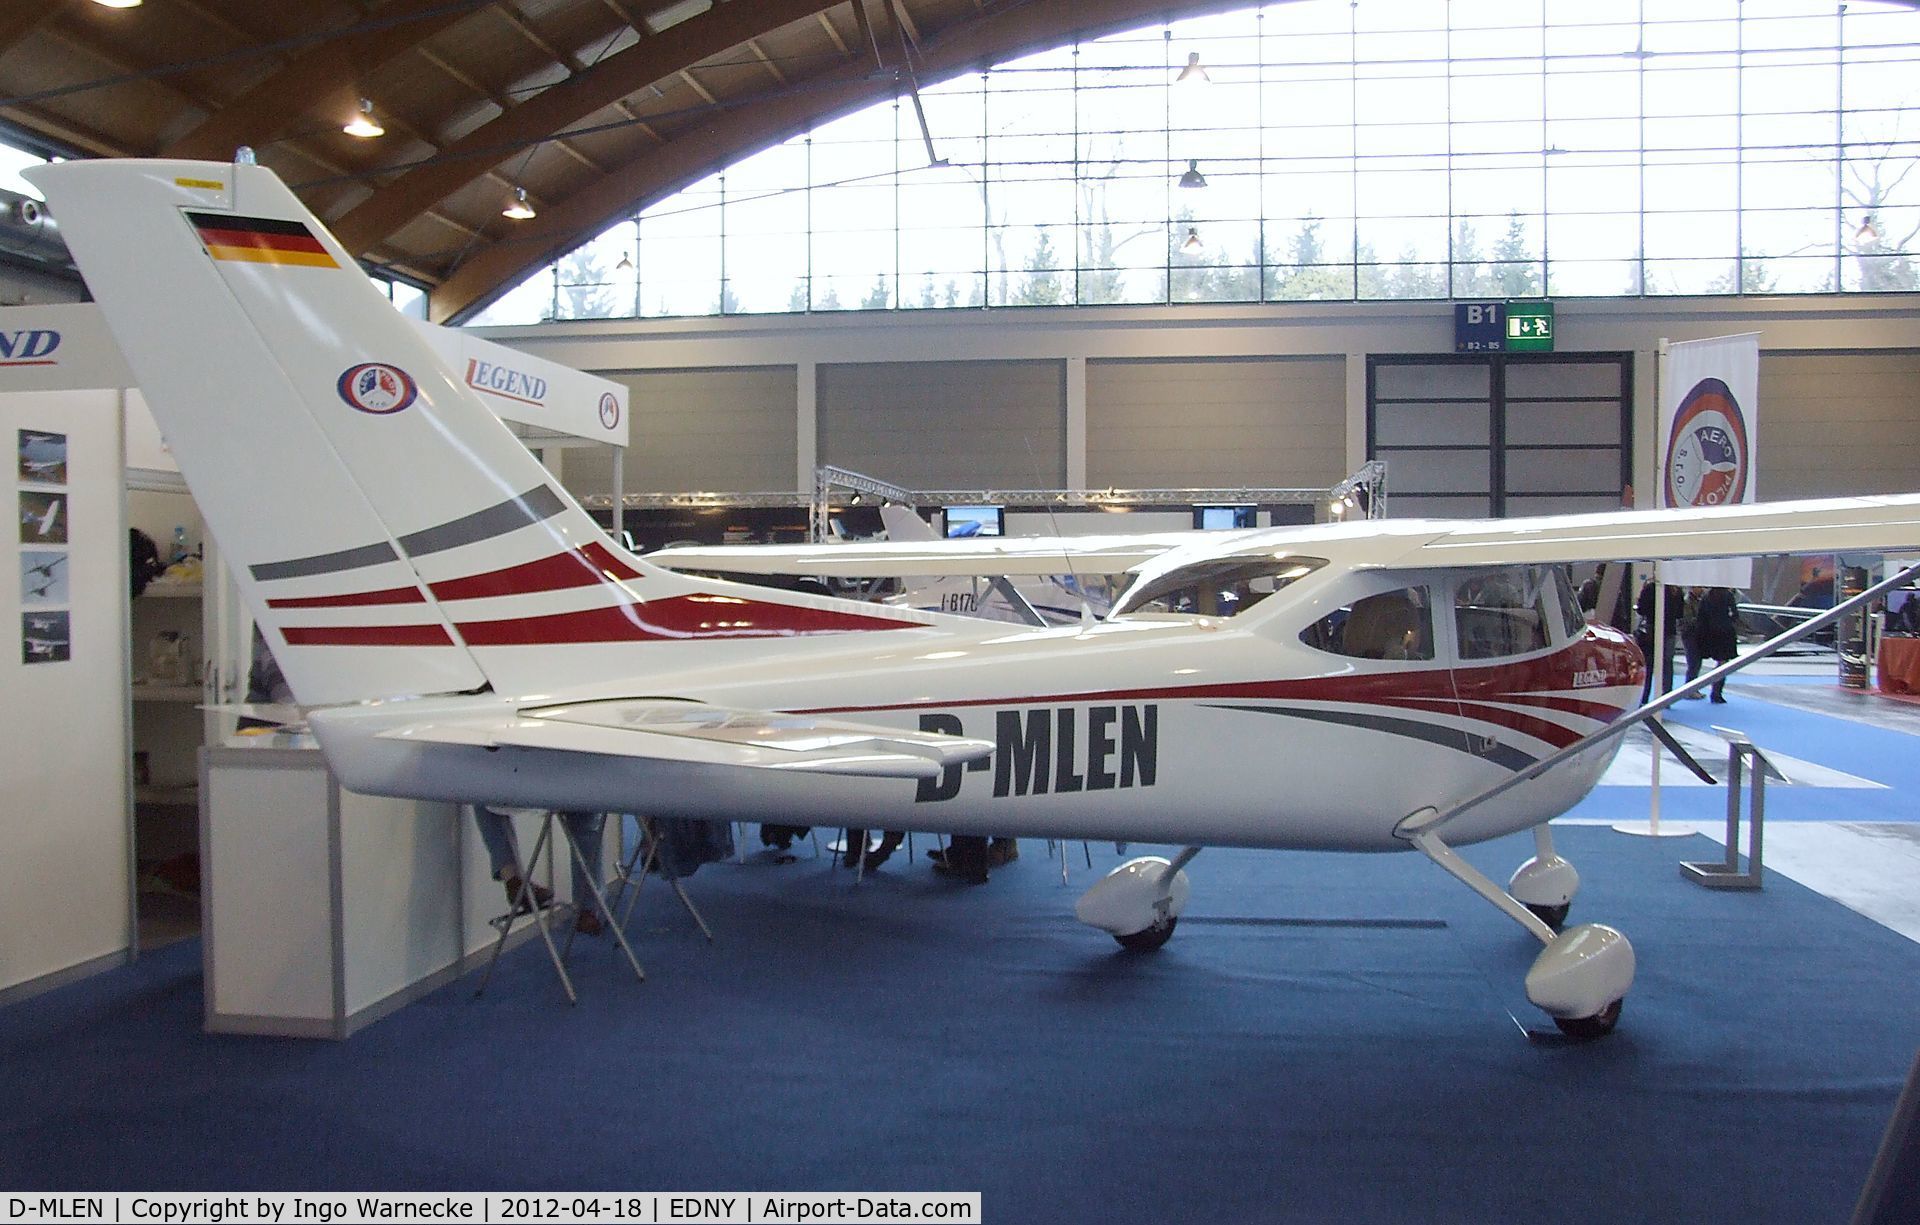 D-MLEN, Aeropilot Legend 540 C/N Not found D-MLEN, Aeropilot Legend 540 at the AERO 2012, Friedrichshafen